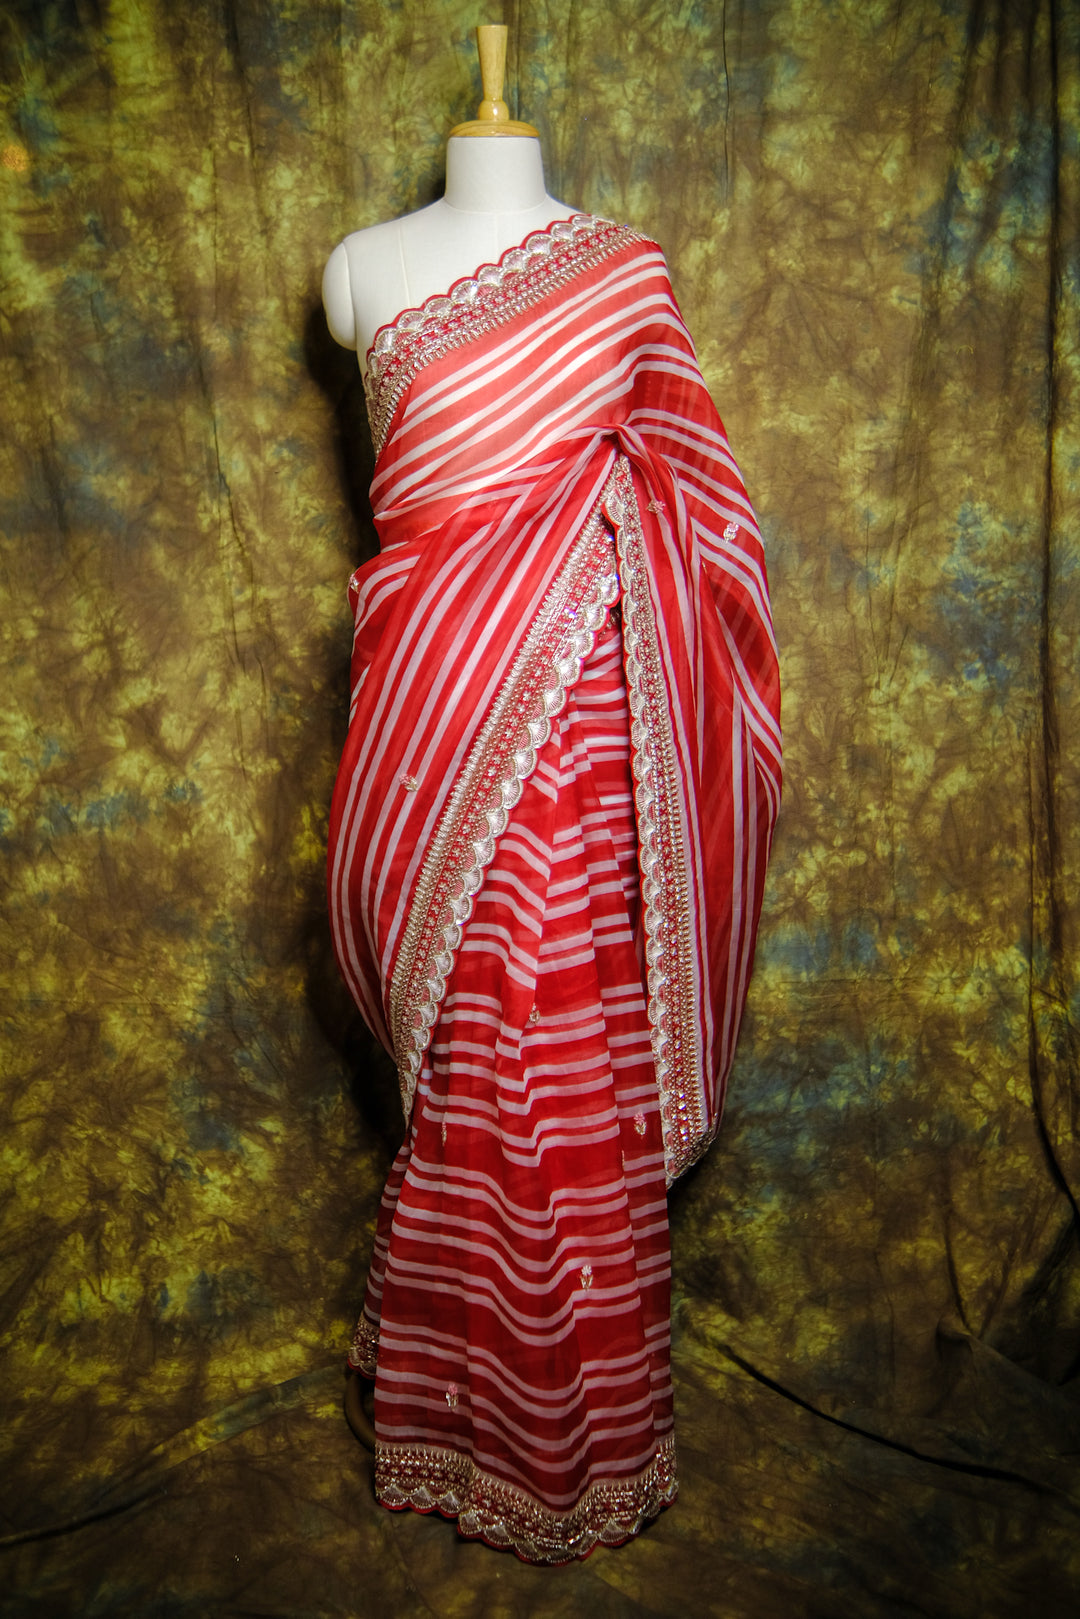 Designer Saree In Red Color